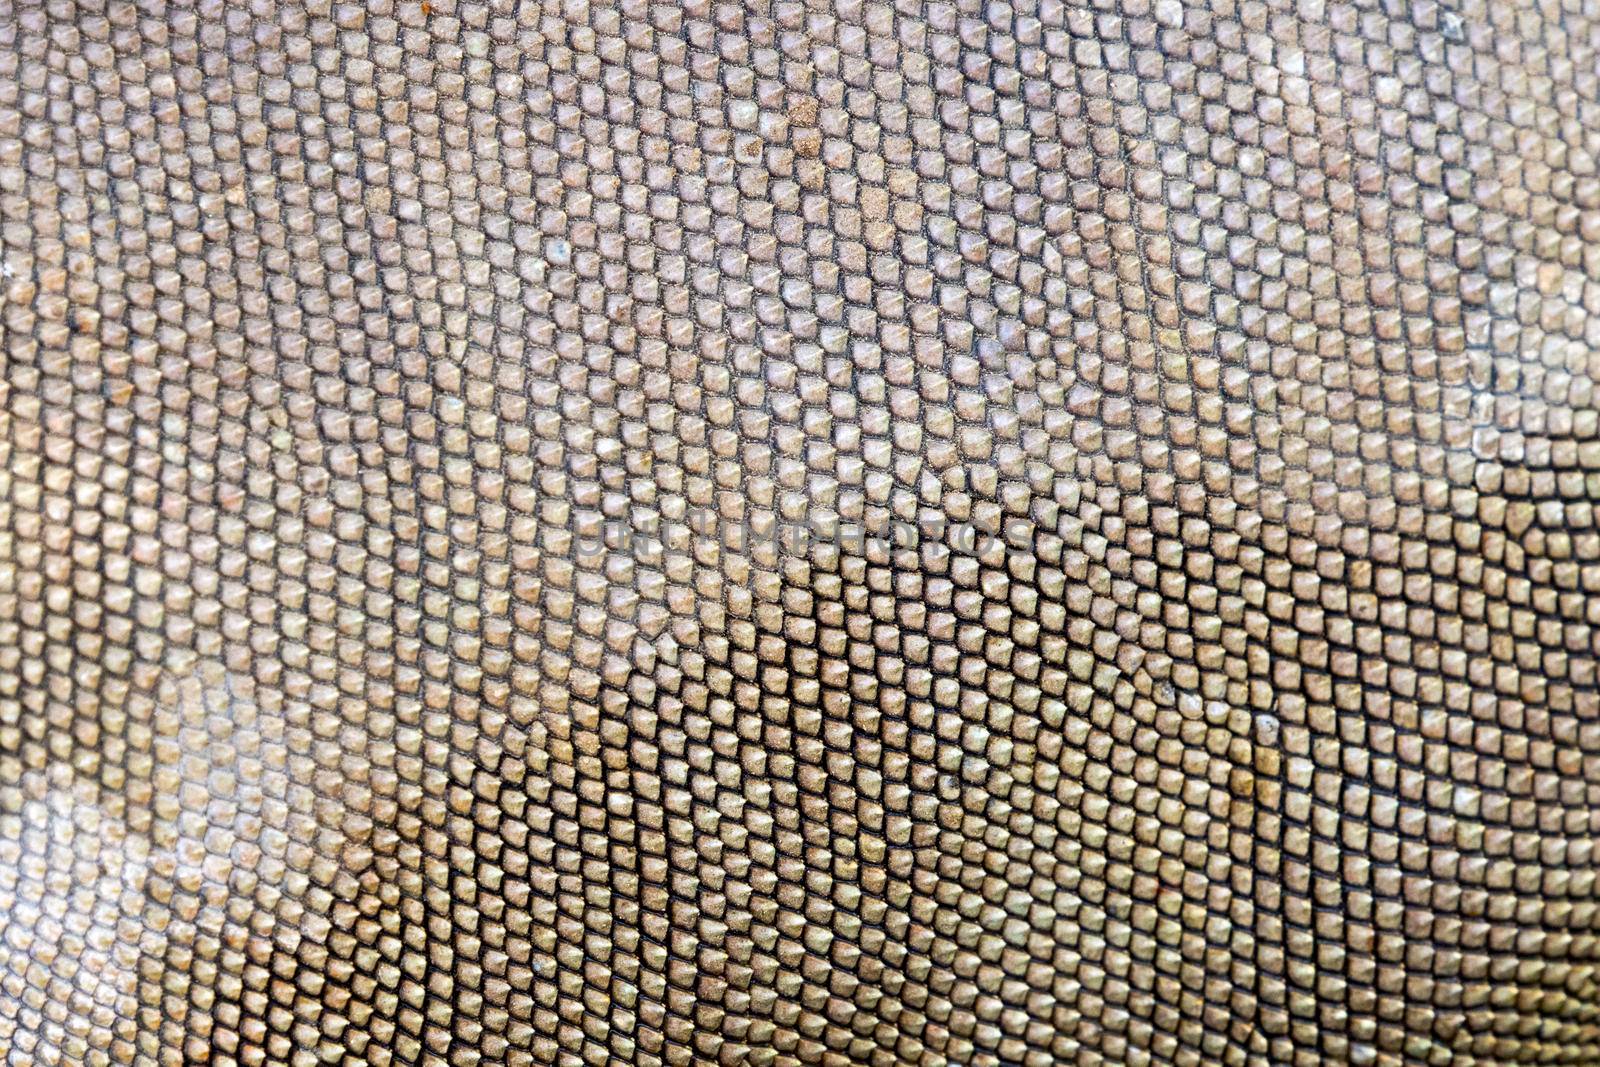 Image of a Iguana skin. Animals background by yod67